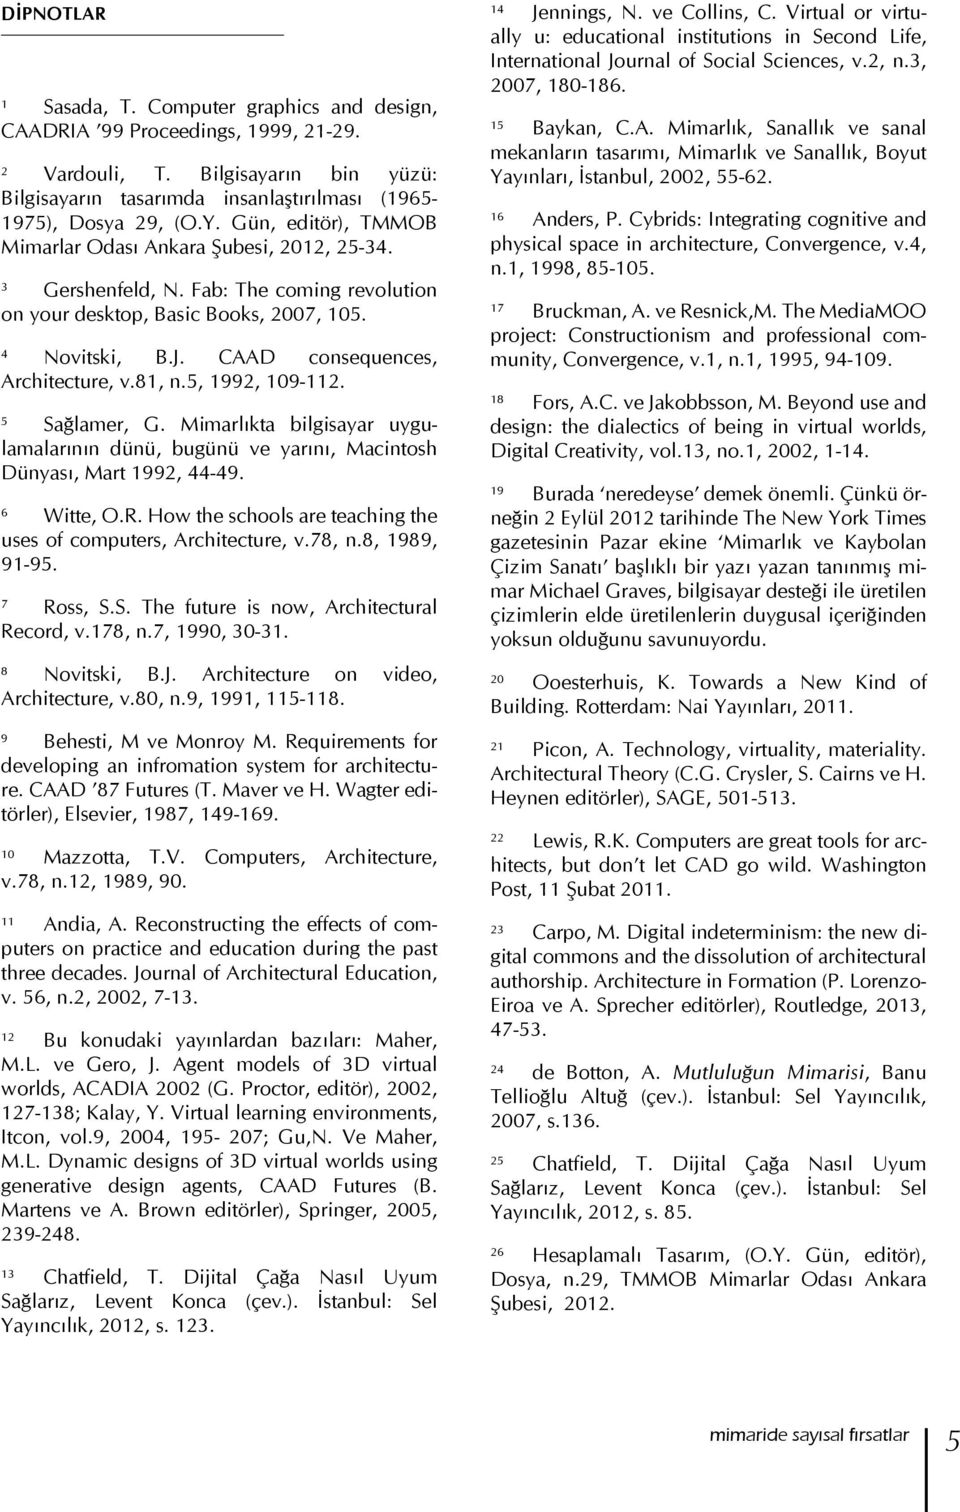 CAAD consequences, Architecture, v.81, n.5, 1992, 109-112. 5 Sağlamer, G. Mimarlıkta bilgisayar uygulamalarının dünü, bugünü ve yarını, Macintosh Dünyası, Mart 1992, 44-49. 6 Witte, O.R.